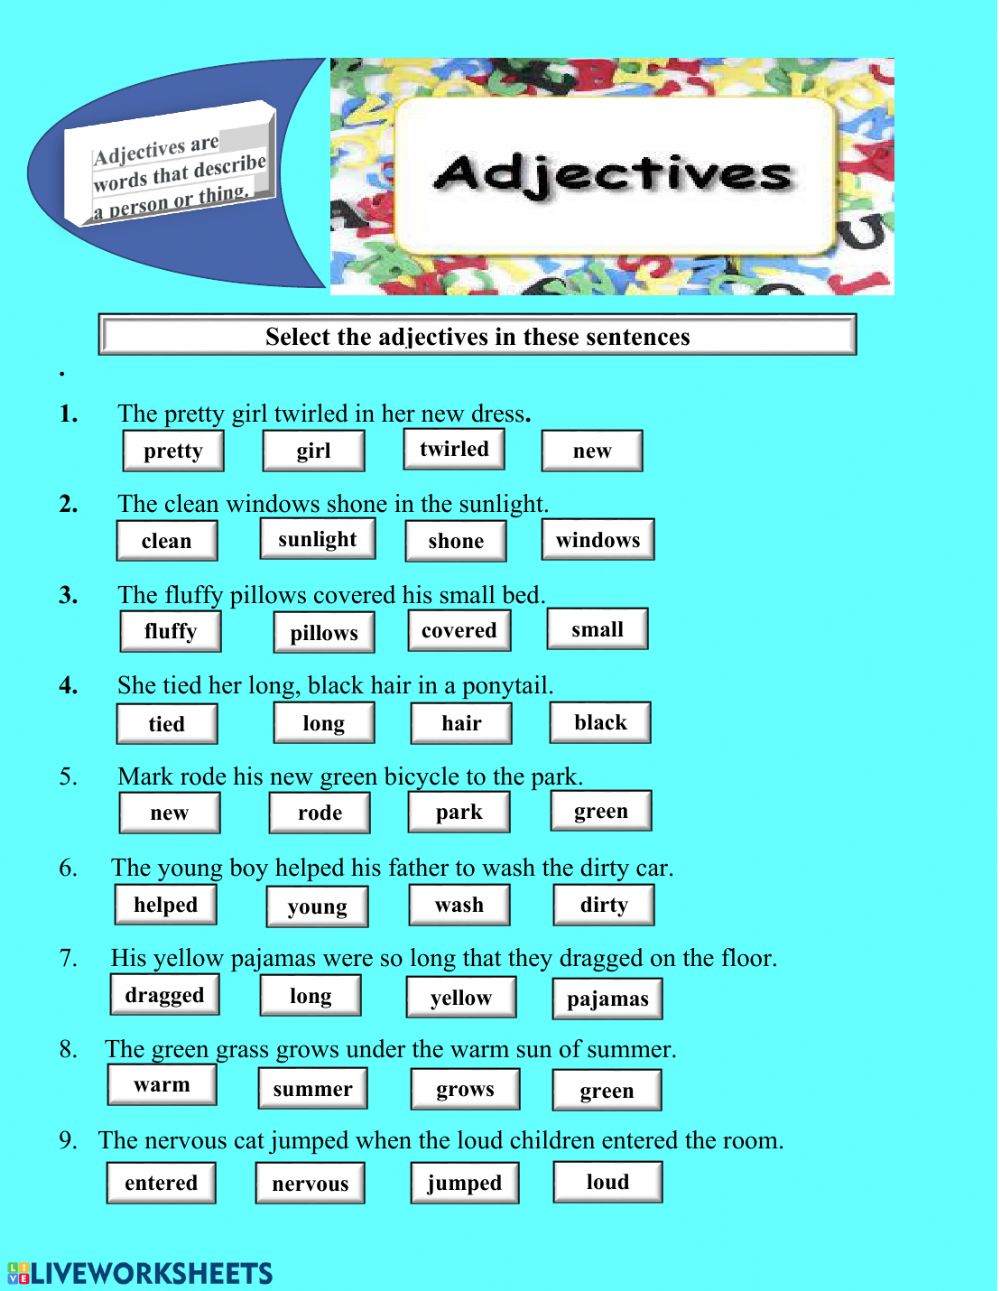 adjectives-grade-3-worksheets-pdf-adjectiveworksheets